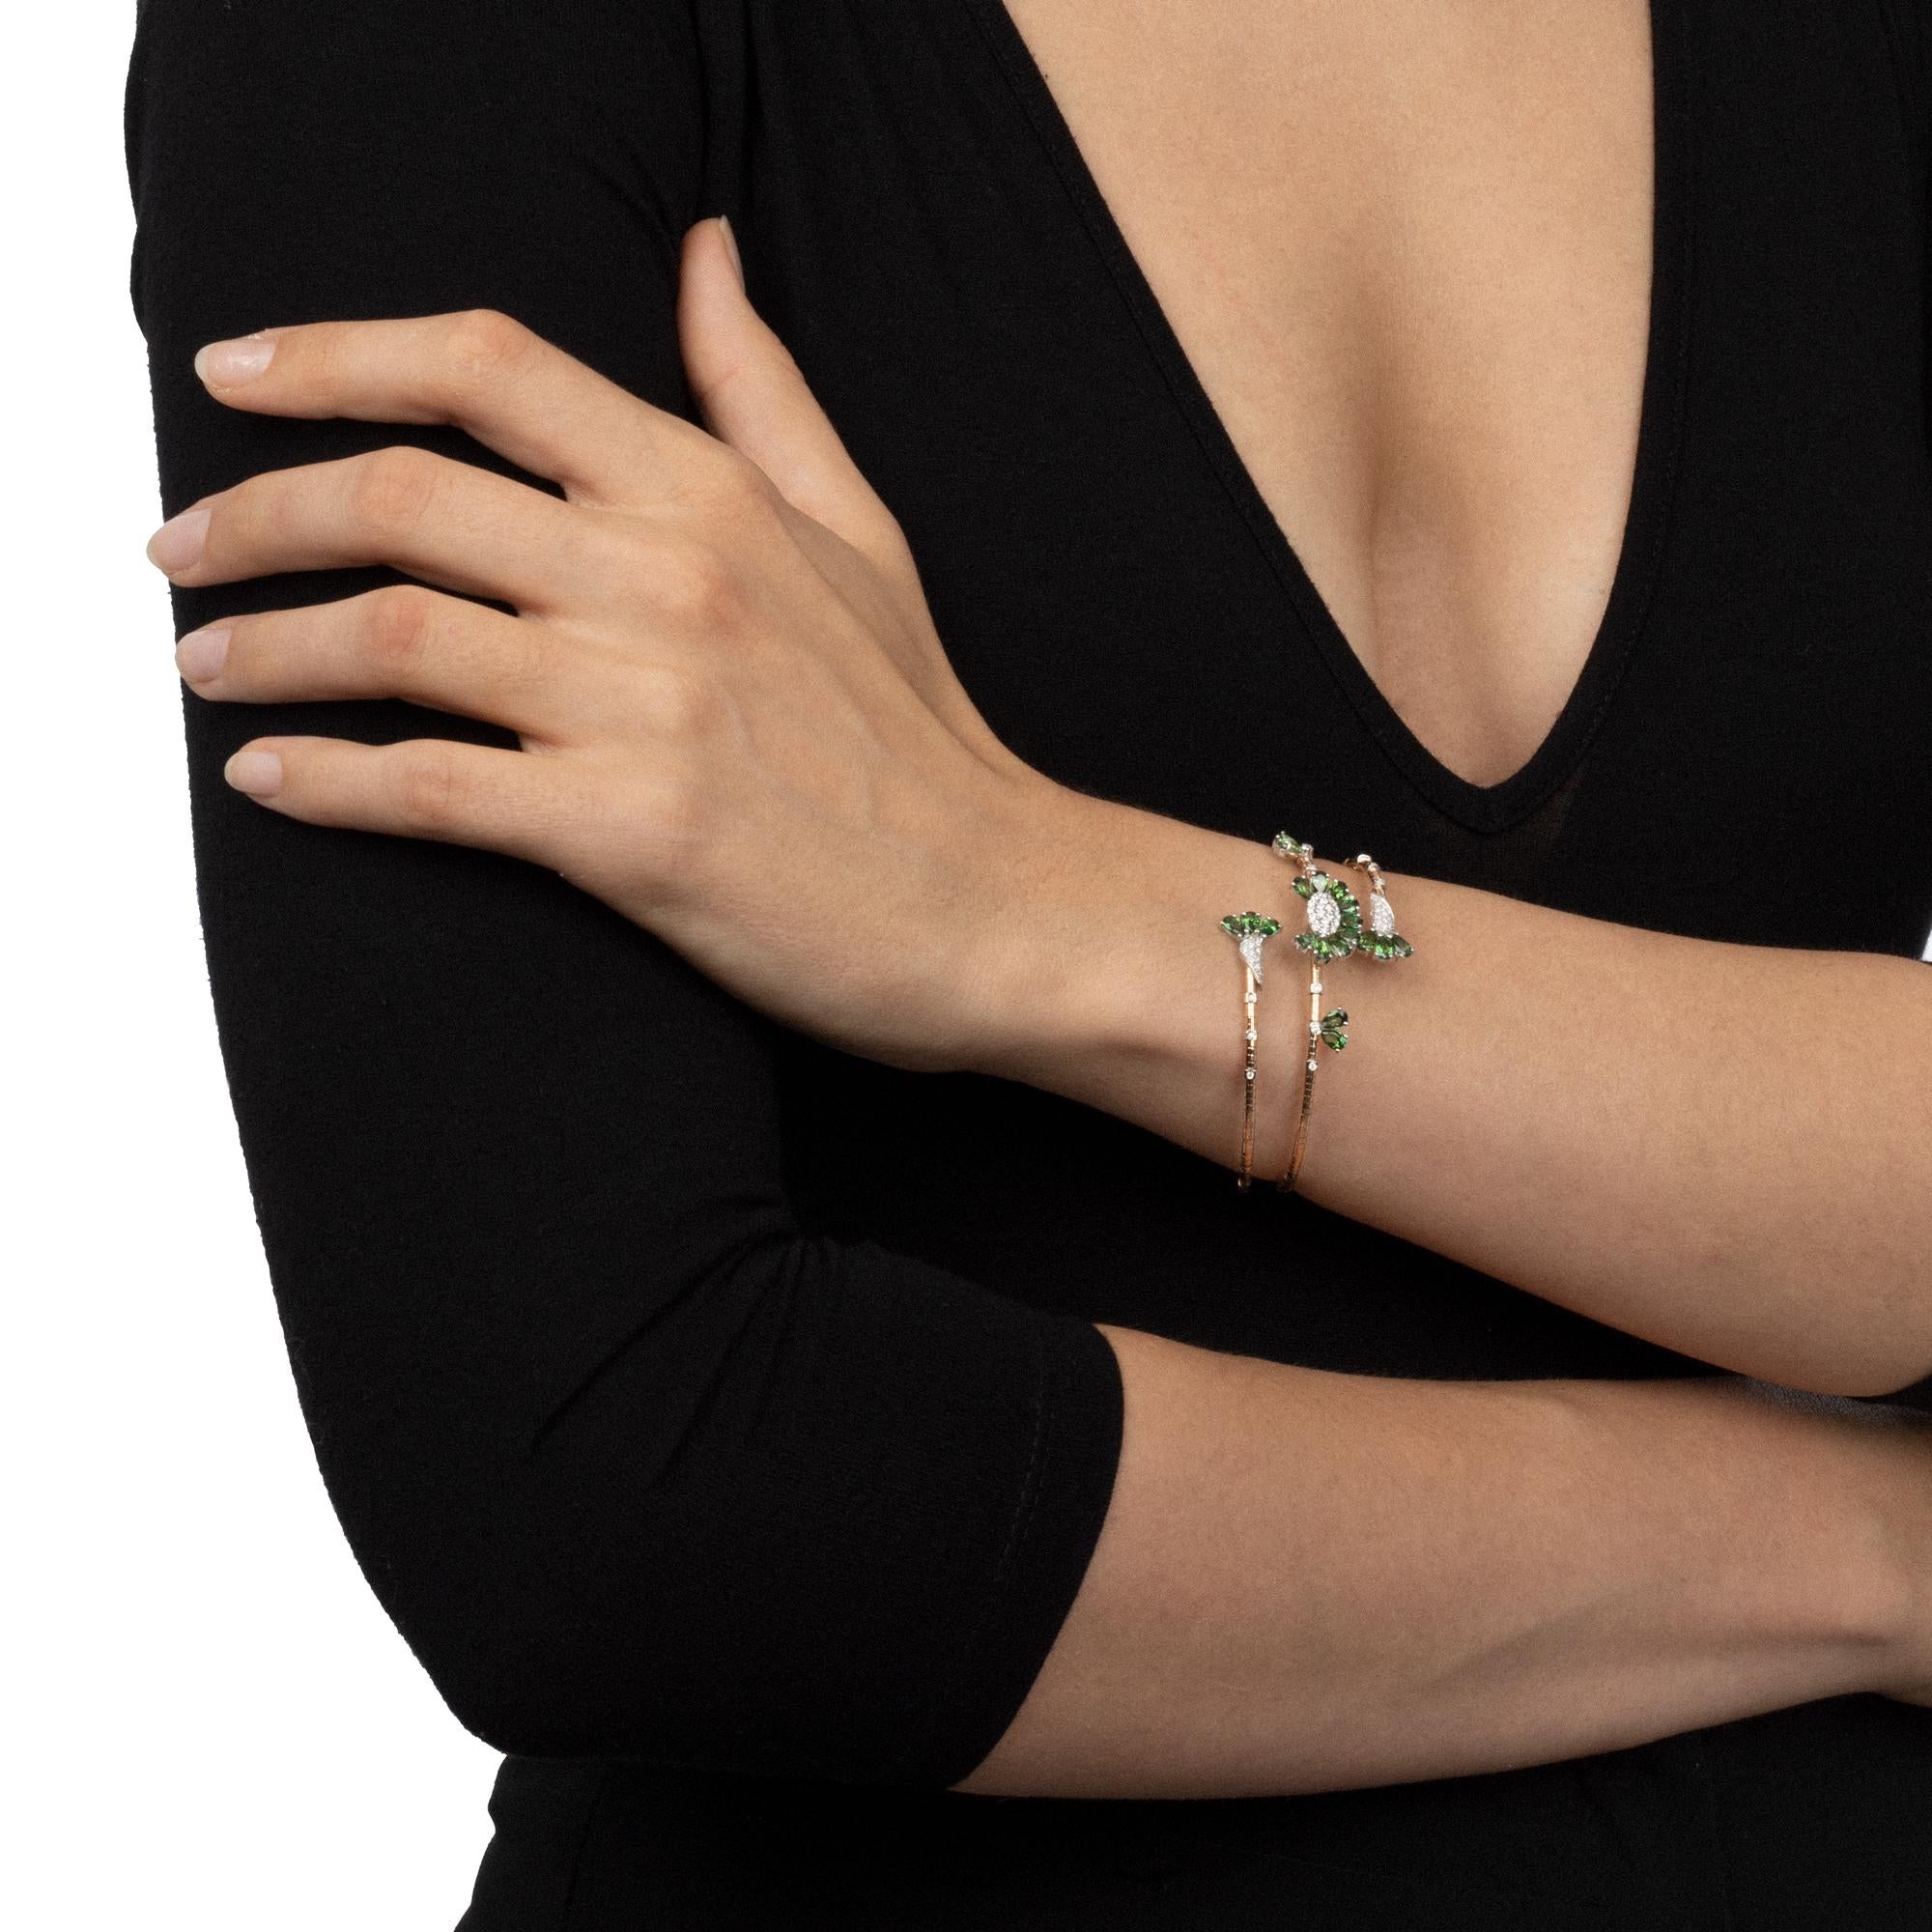 La forme en spirale de ce bracelet flexible sophistiqué avec un noyau en titane est conçue pour s'enrouler doucement autour du poignet, captant et reflétant la lumière. L'élégance sophistiquée des topazes vertes est une célébration de la beauté